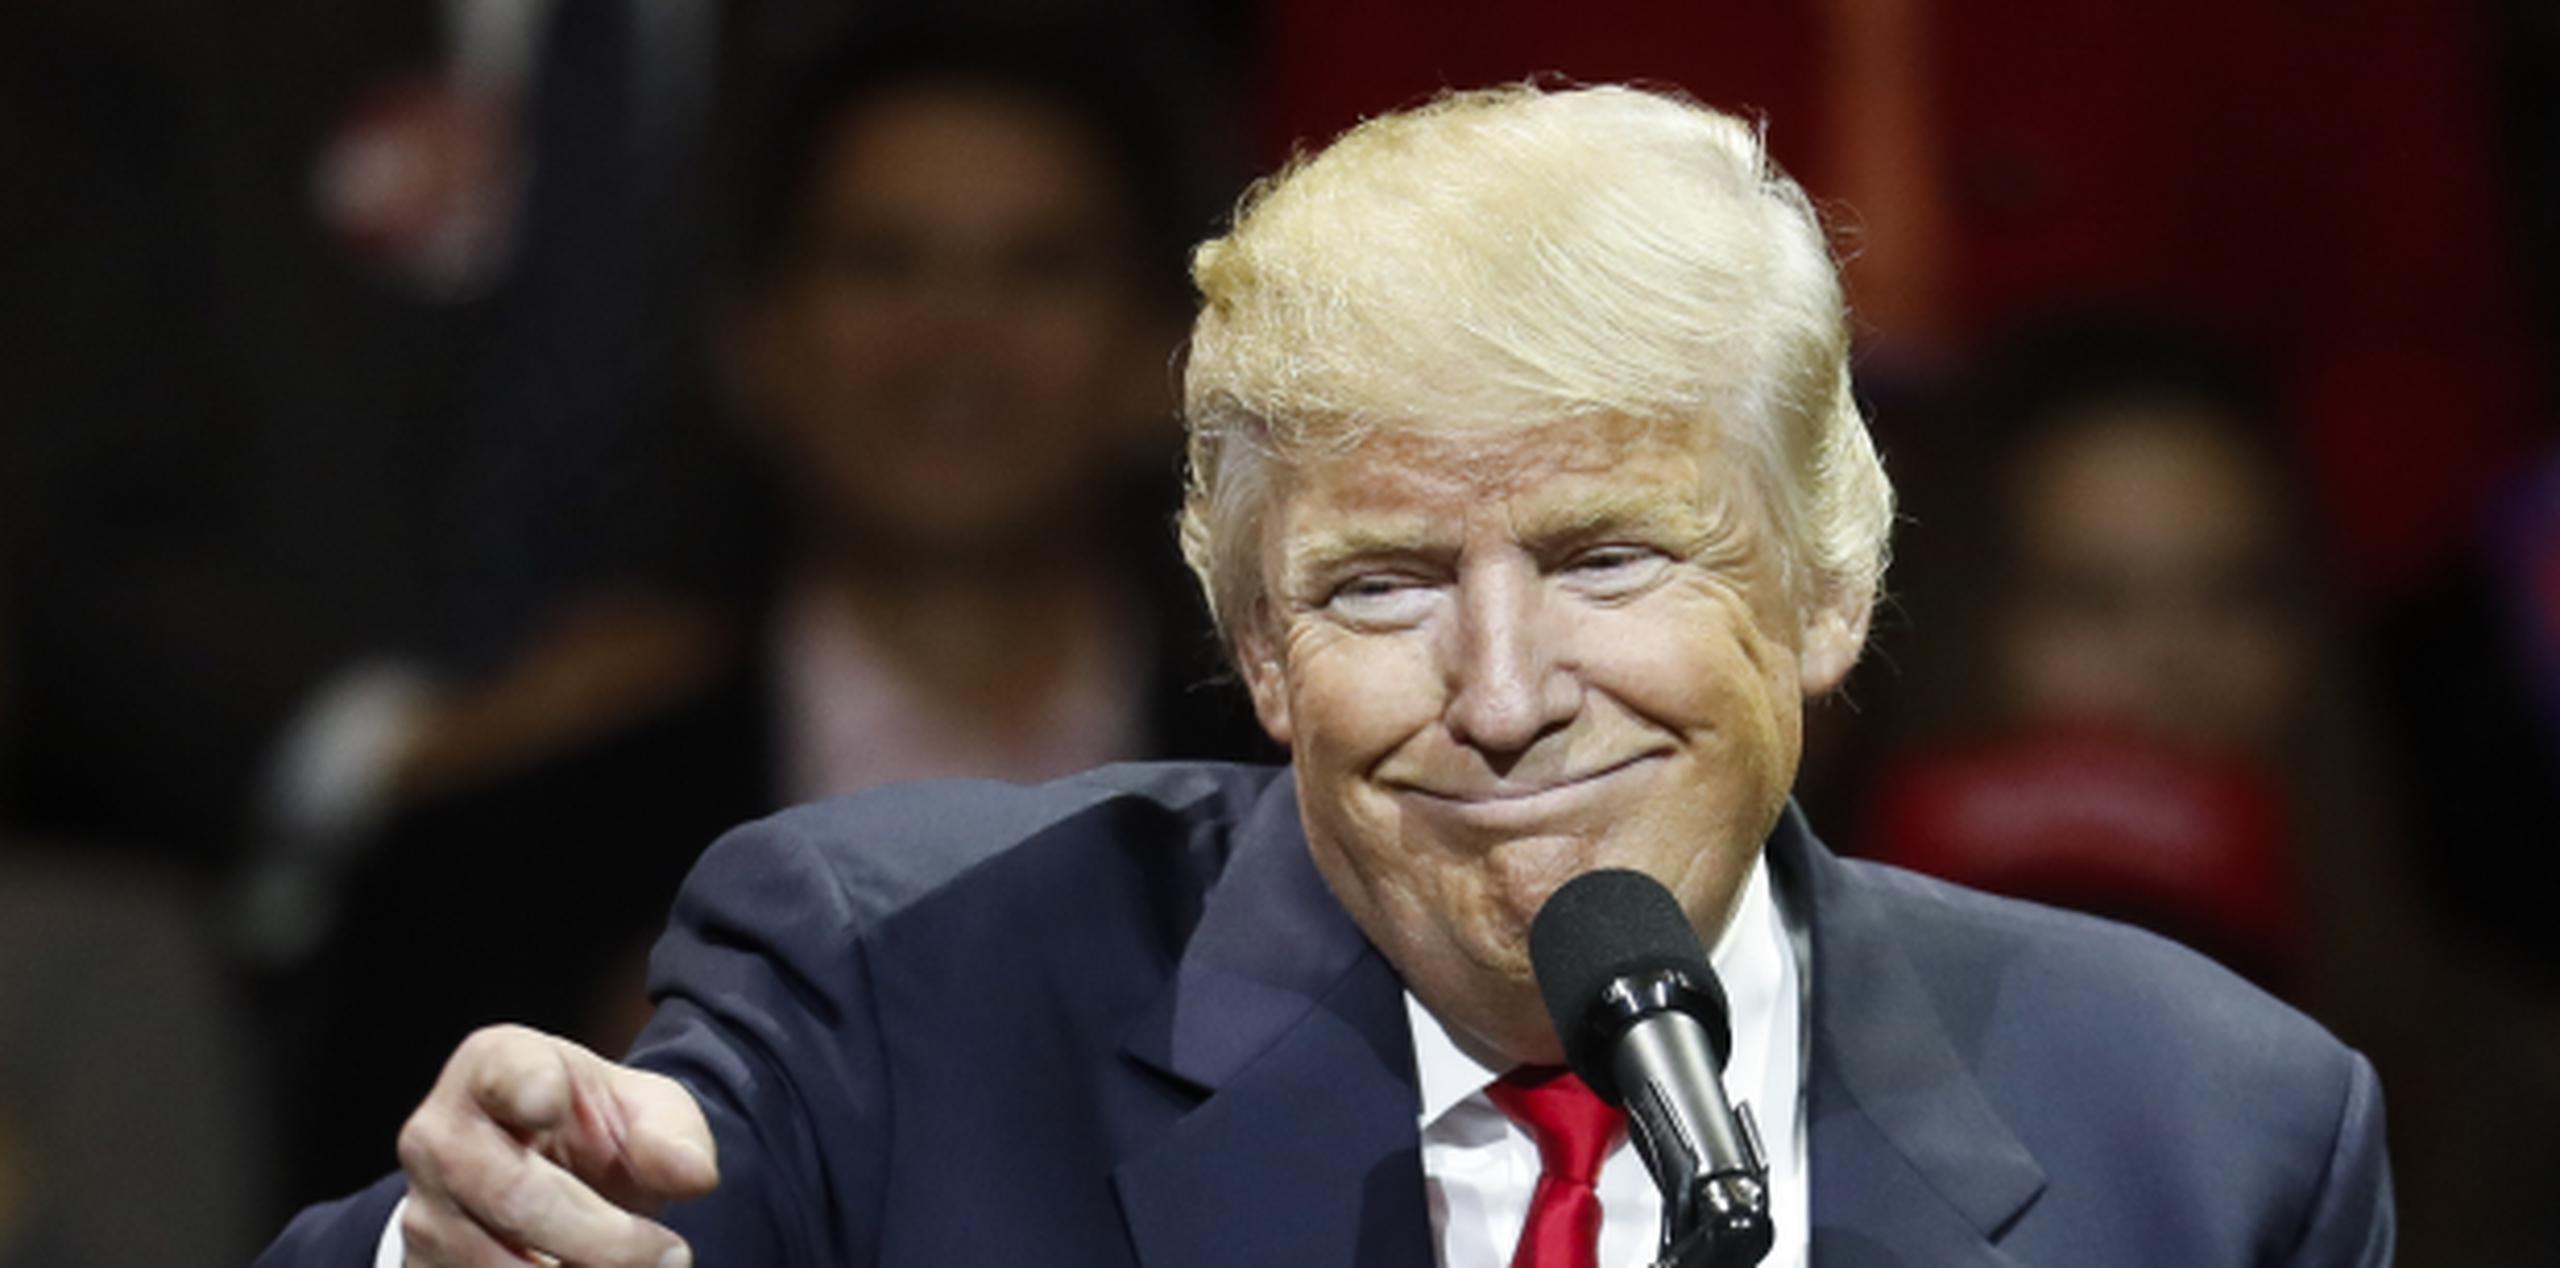 Donald Trump, presidente electo de los Estados Unidos. (AP / John Minchillo)